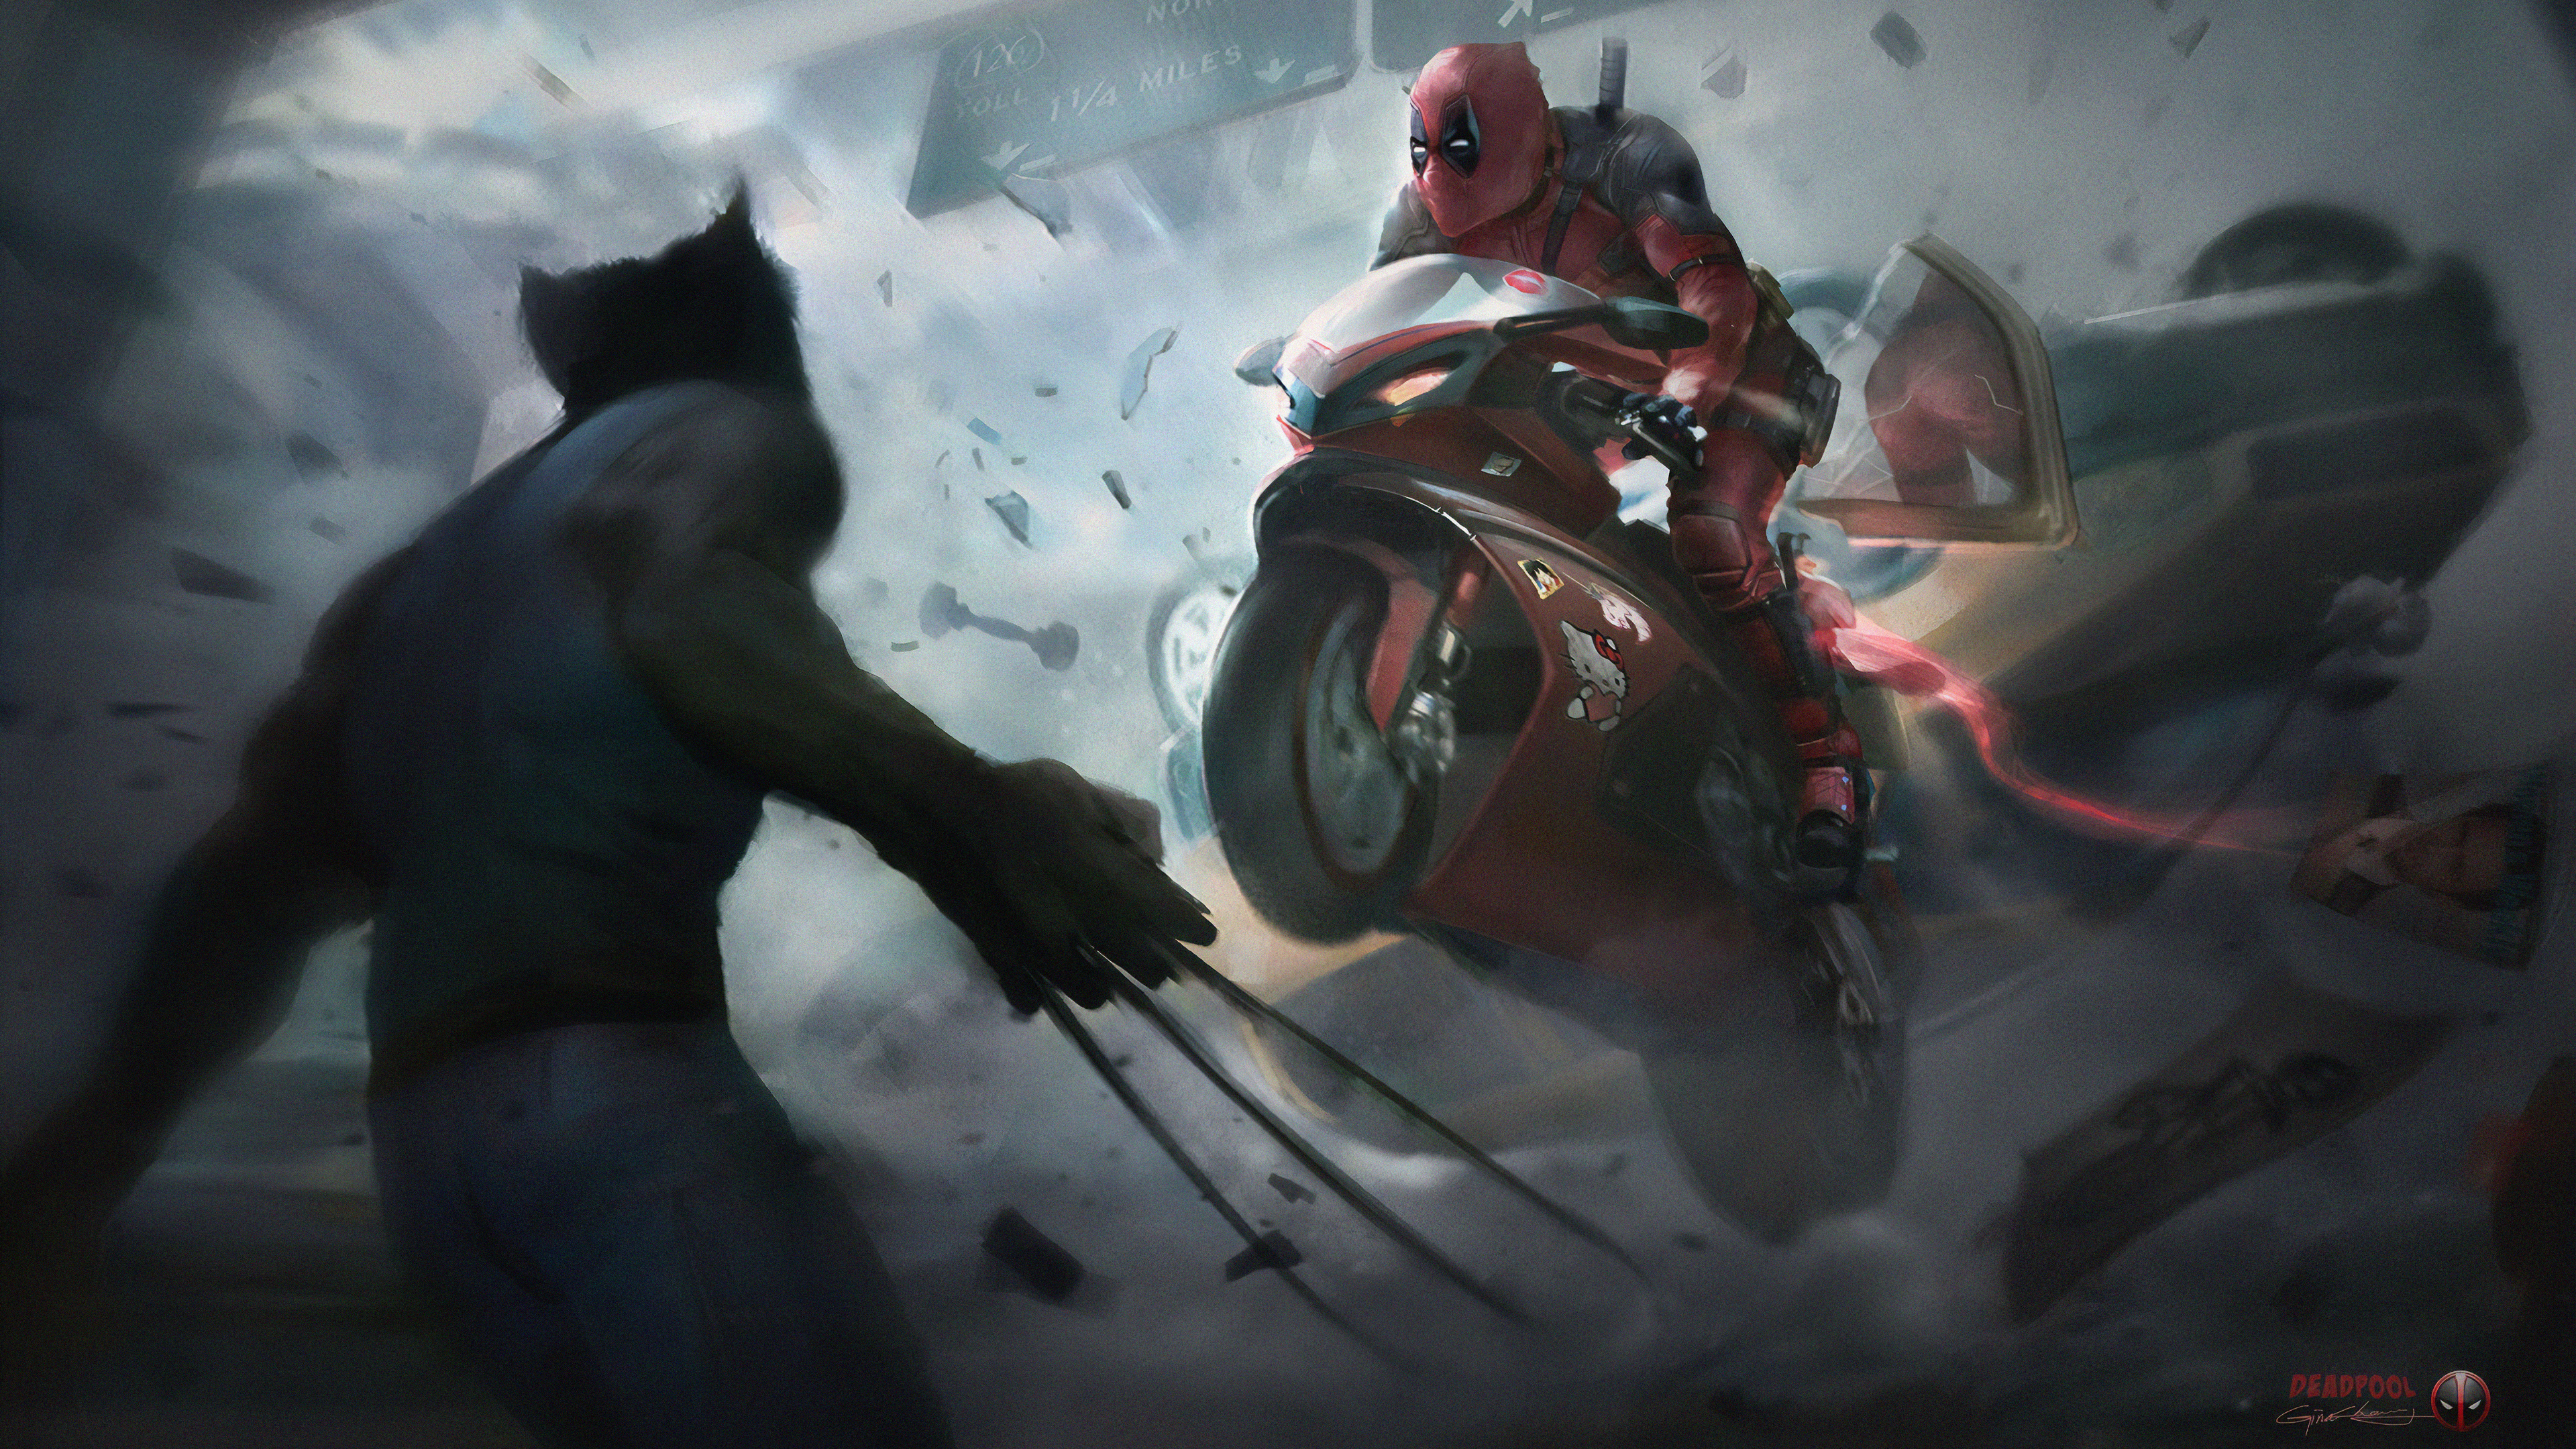 Deadpool On Super Bike - Wolverine And Deadpool Hd - HD Wallpaper 